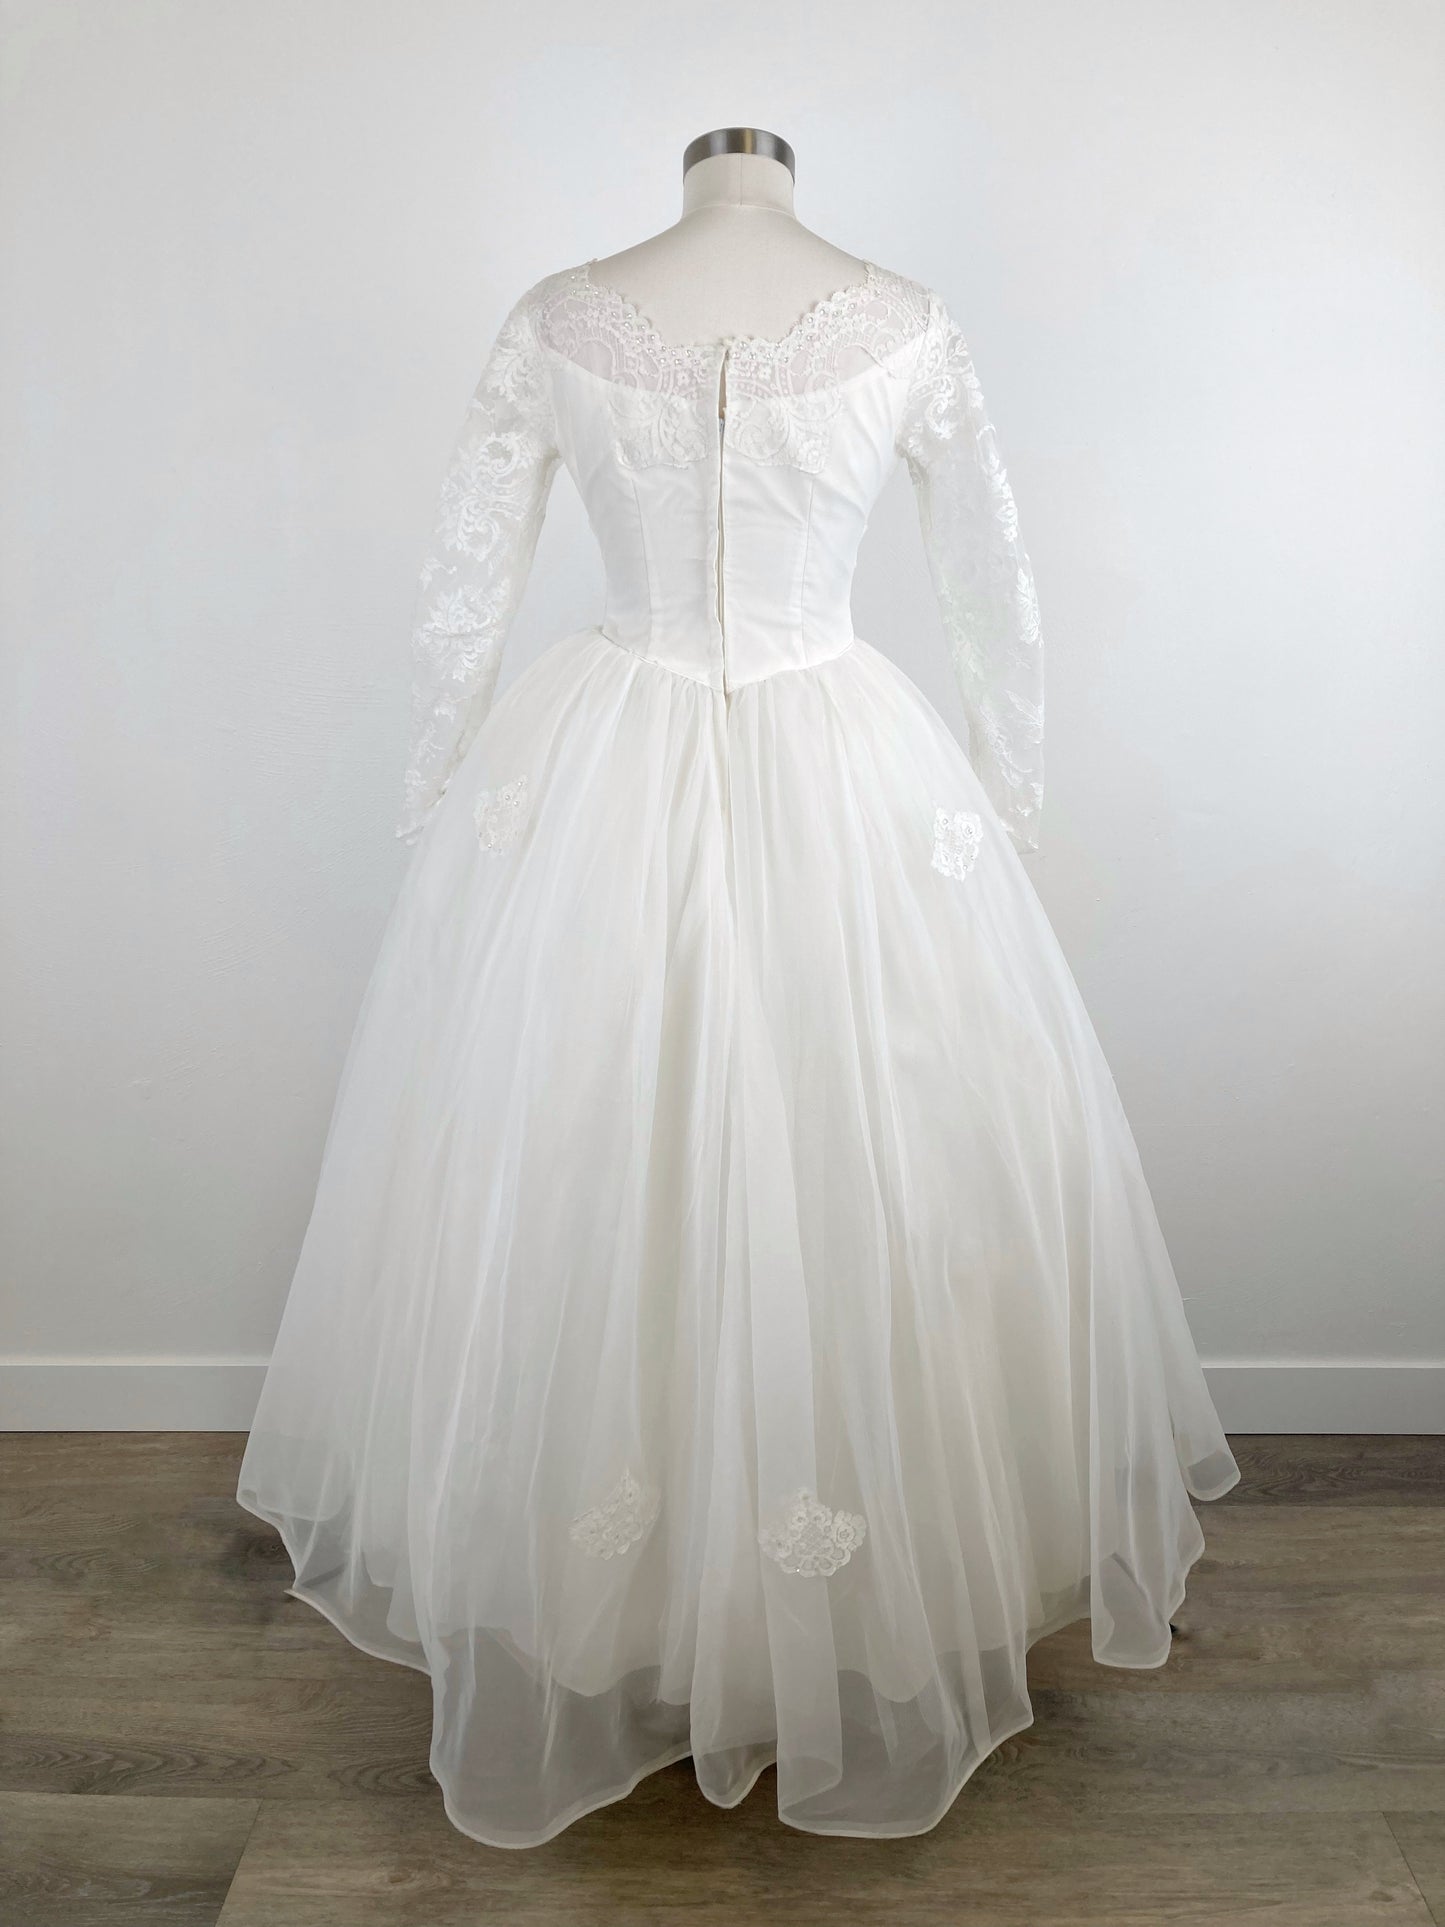 1964 Sweetheart Wedding Dress, "Marilyn", Size S